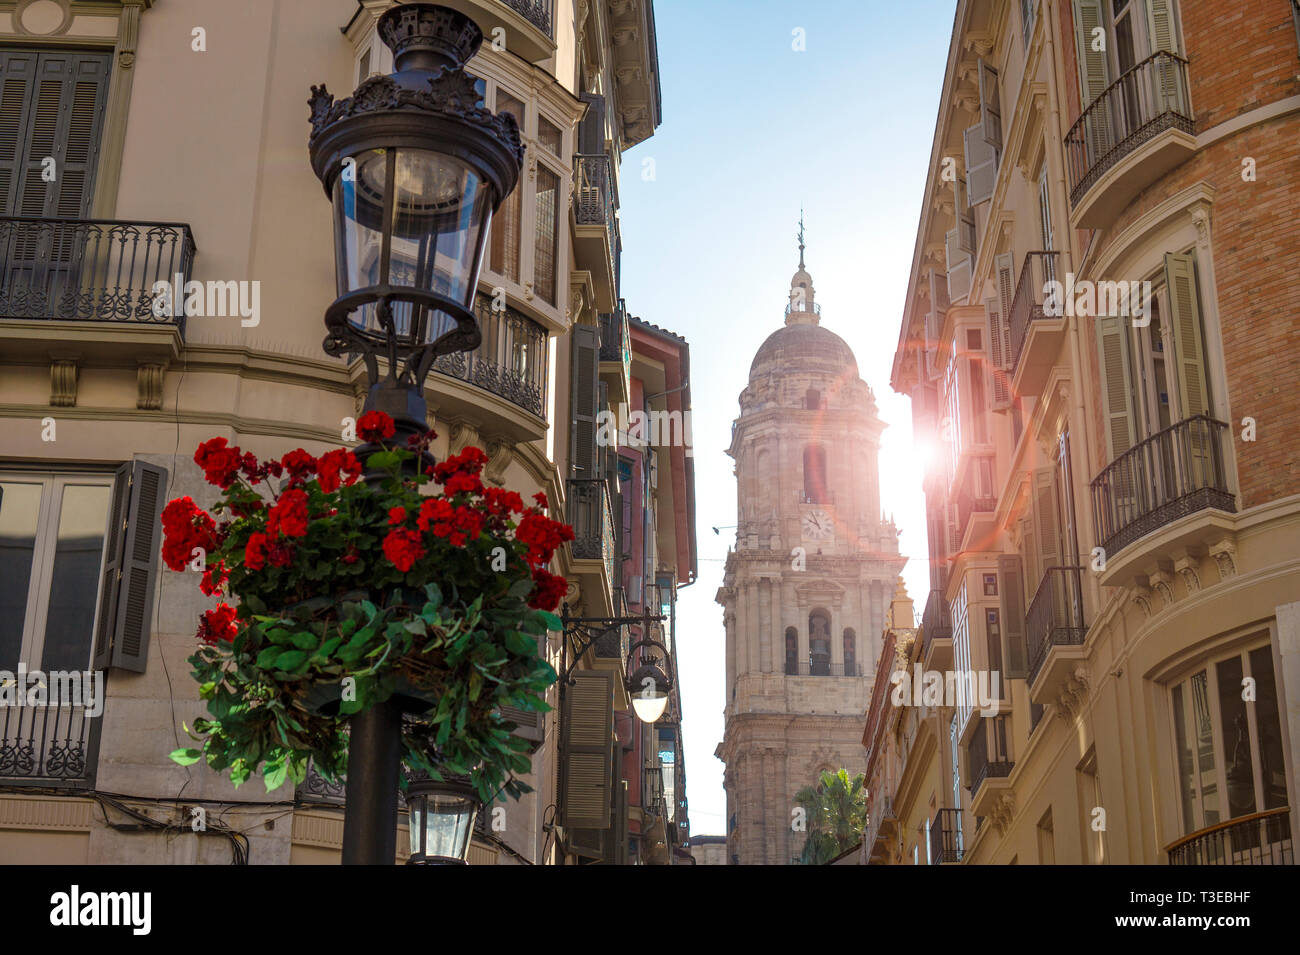 Glockenturm der Menschwerdung Catedral am Ende einer engen Altstadt Straße in Malaga Spanien mit Sonne und ein Geranium flower Stockfoto